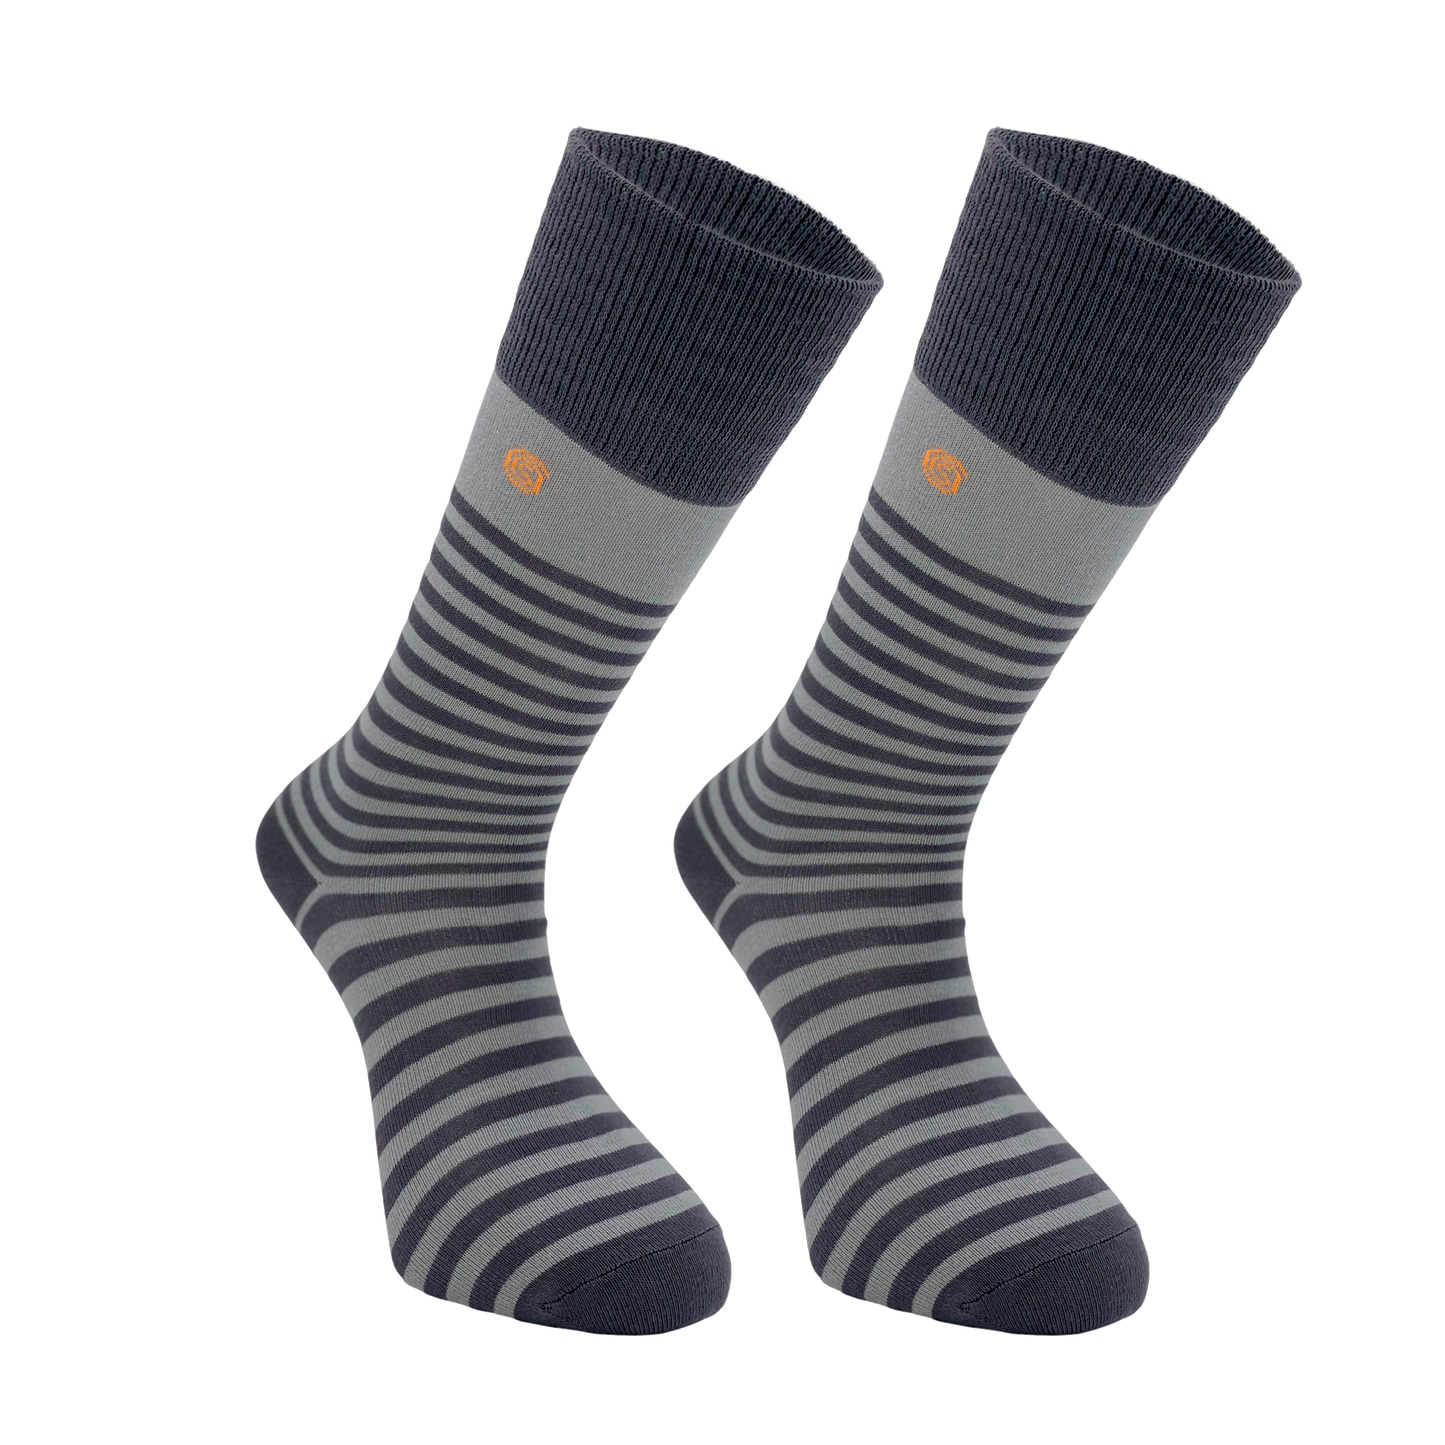 Chaussettes hautes classiques à rayures grises - disponibles en ensemble pratique de 3 ou 6 paires